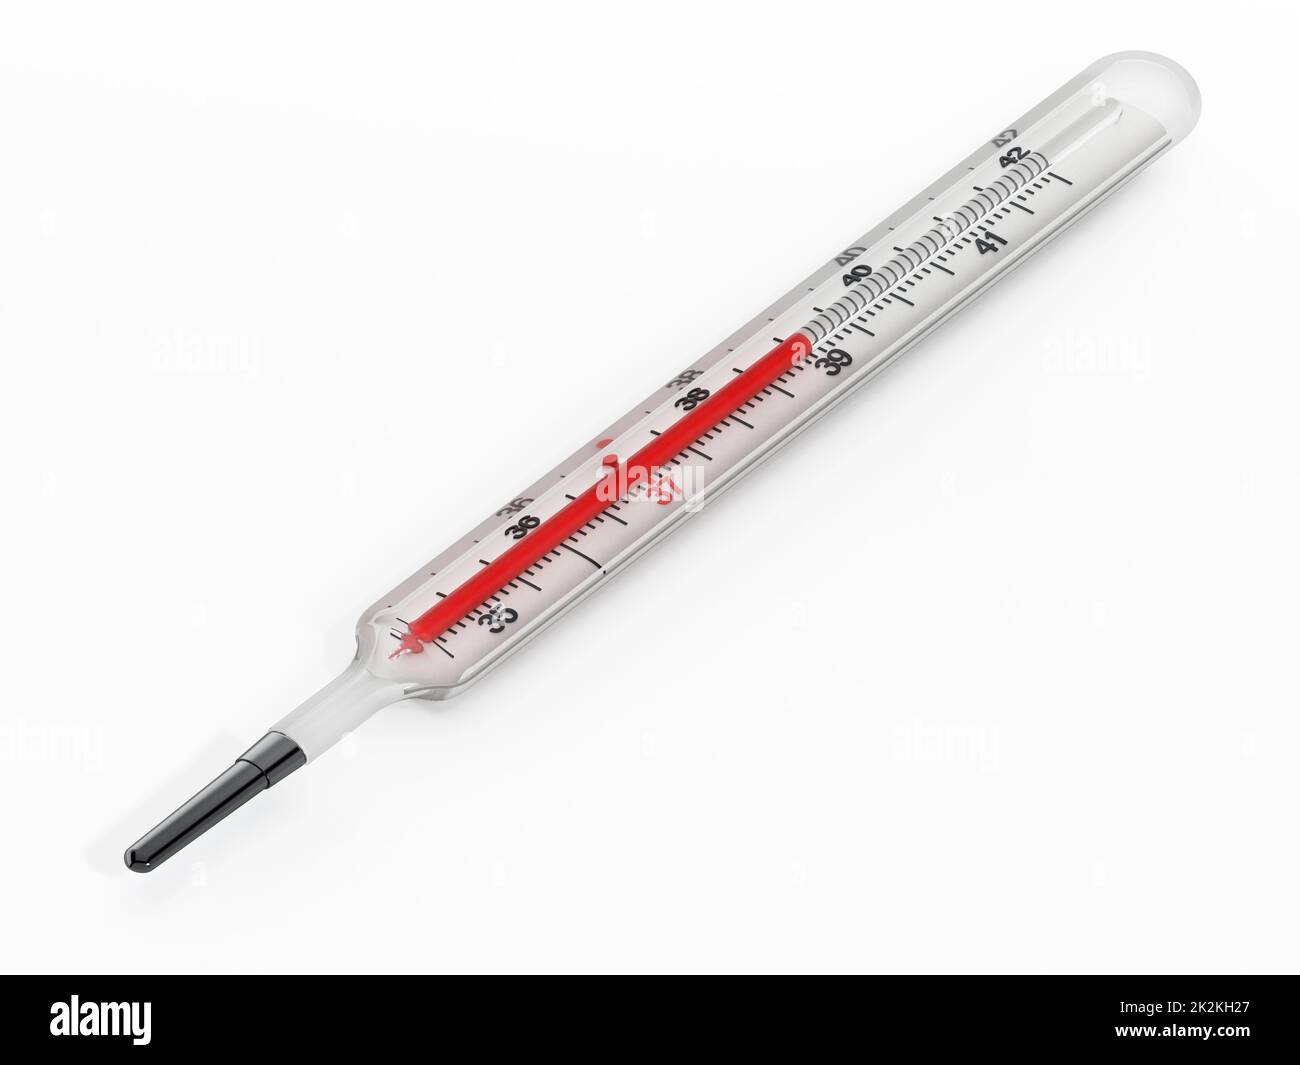 https://c8.alamy.com/comp/2K2KH27/vintage-thermometer-isolated-on-white-background-3d-illustration-2K2KH27.jpg